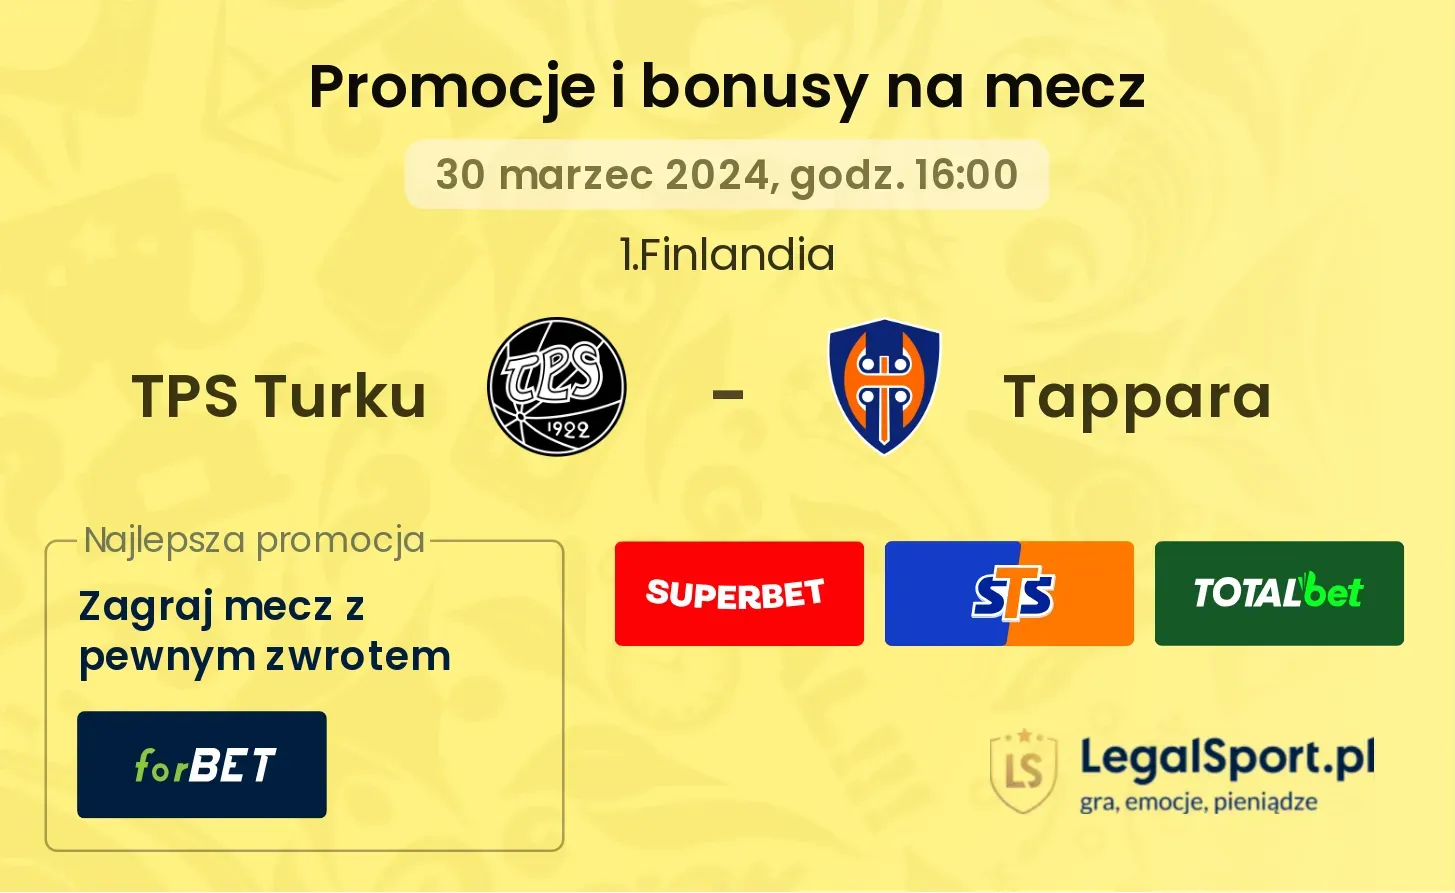 TPS Turku - Tappara promocje bonusy na mecz